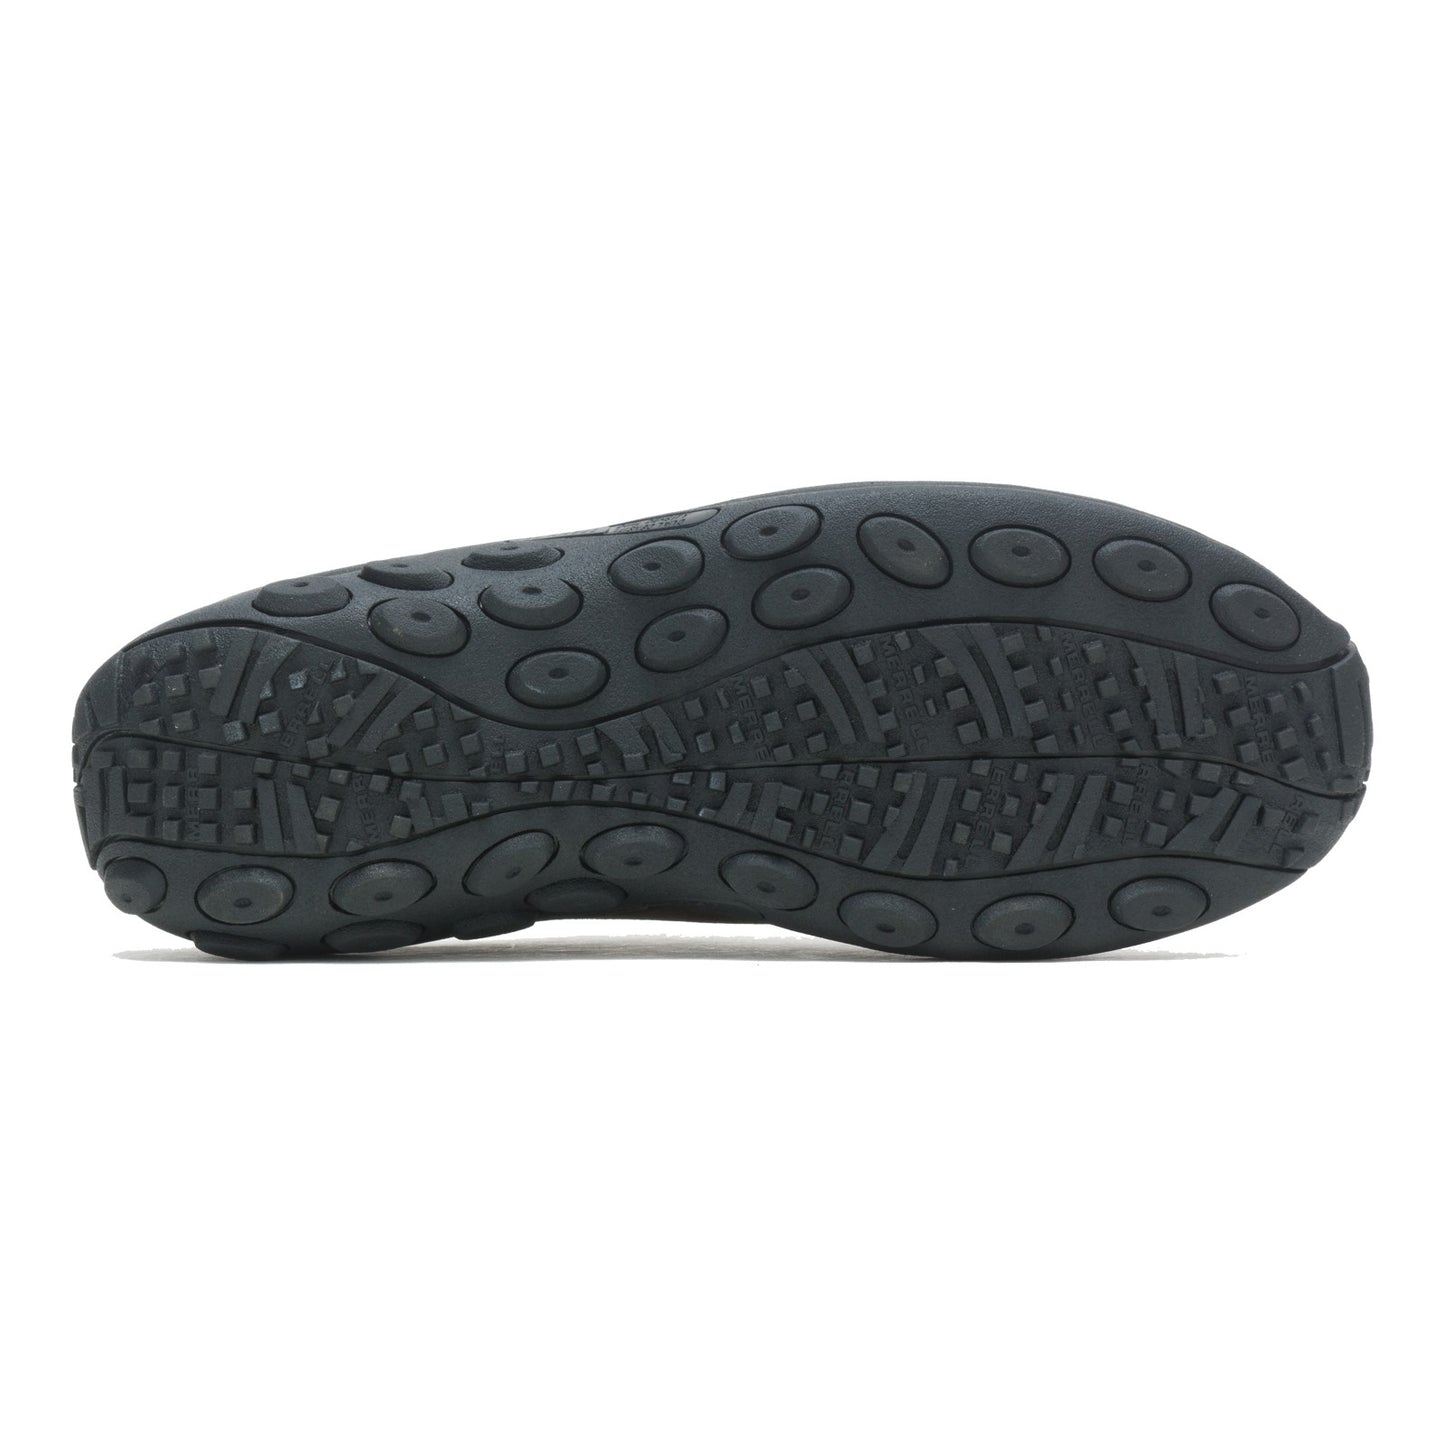 Peltz Shoes  Men's Merrell Jungle Slide Clog - Wide Width GUNSMOKE J003231W